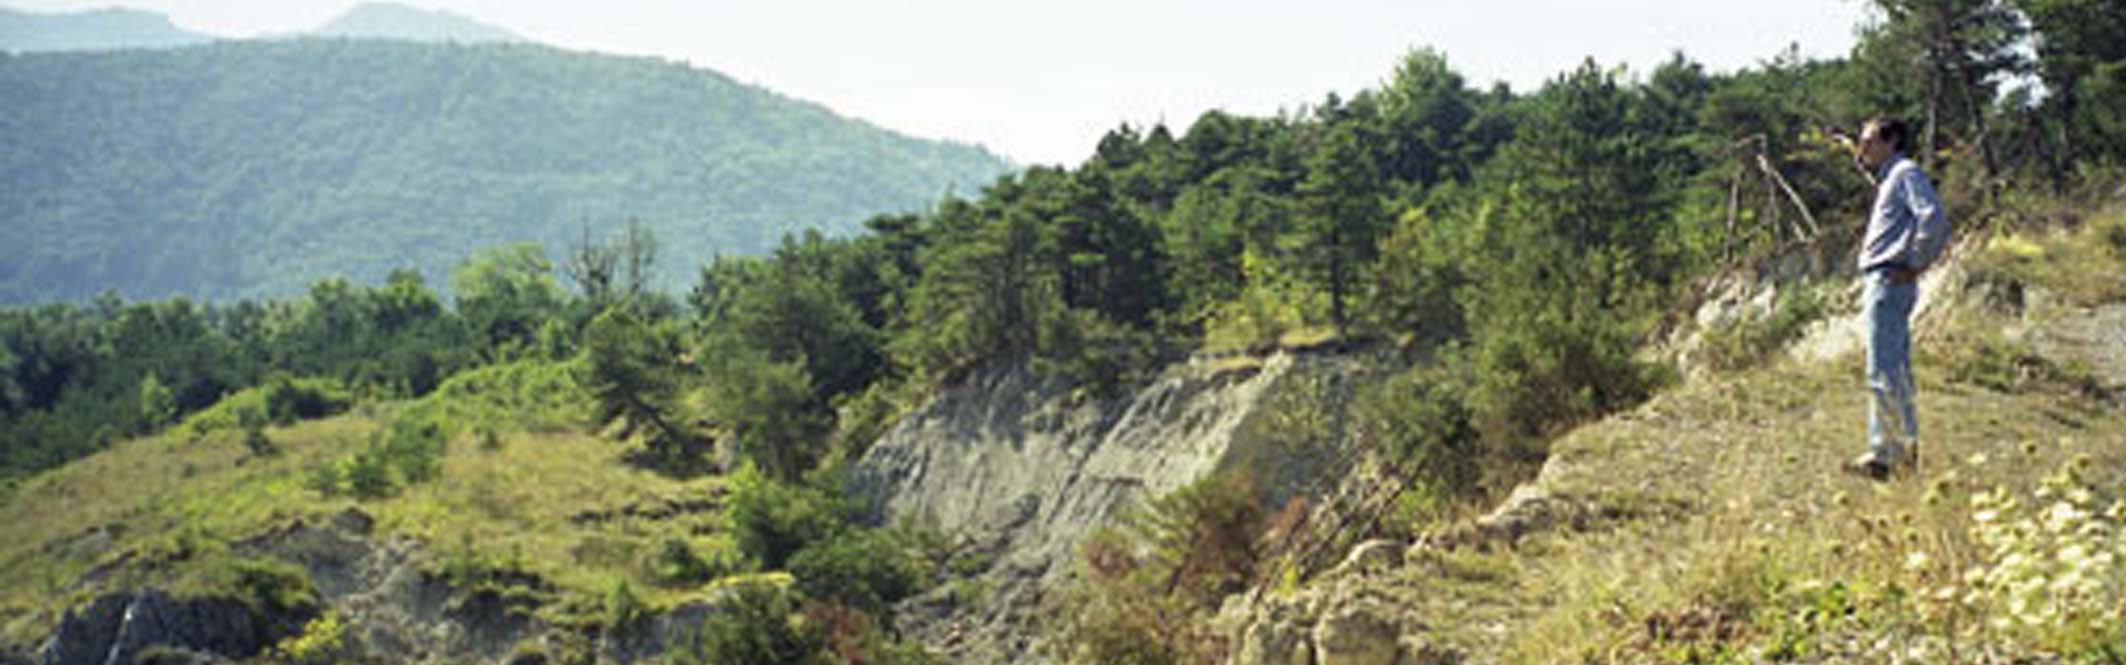 Avignonet/Harmalière landslides: main scarp in 2001 after a major reactivation 